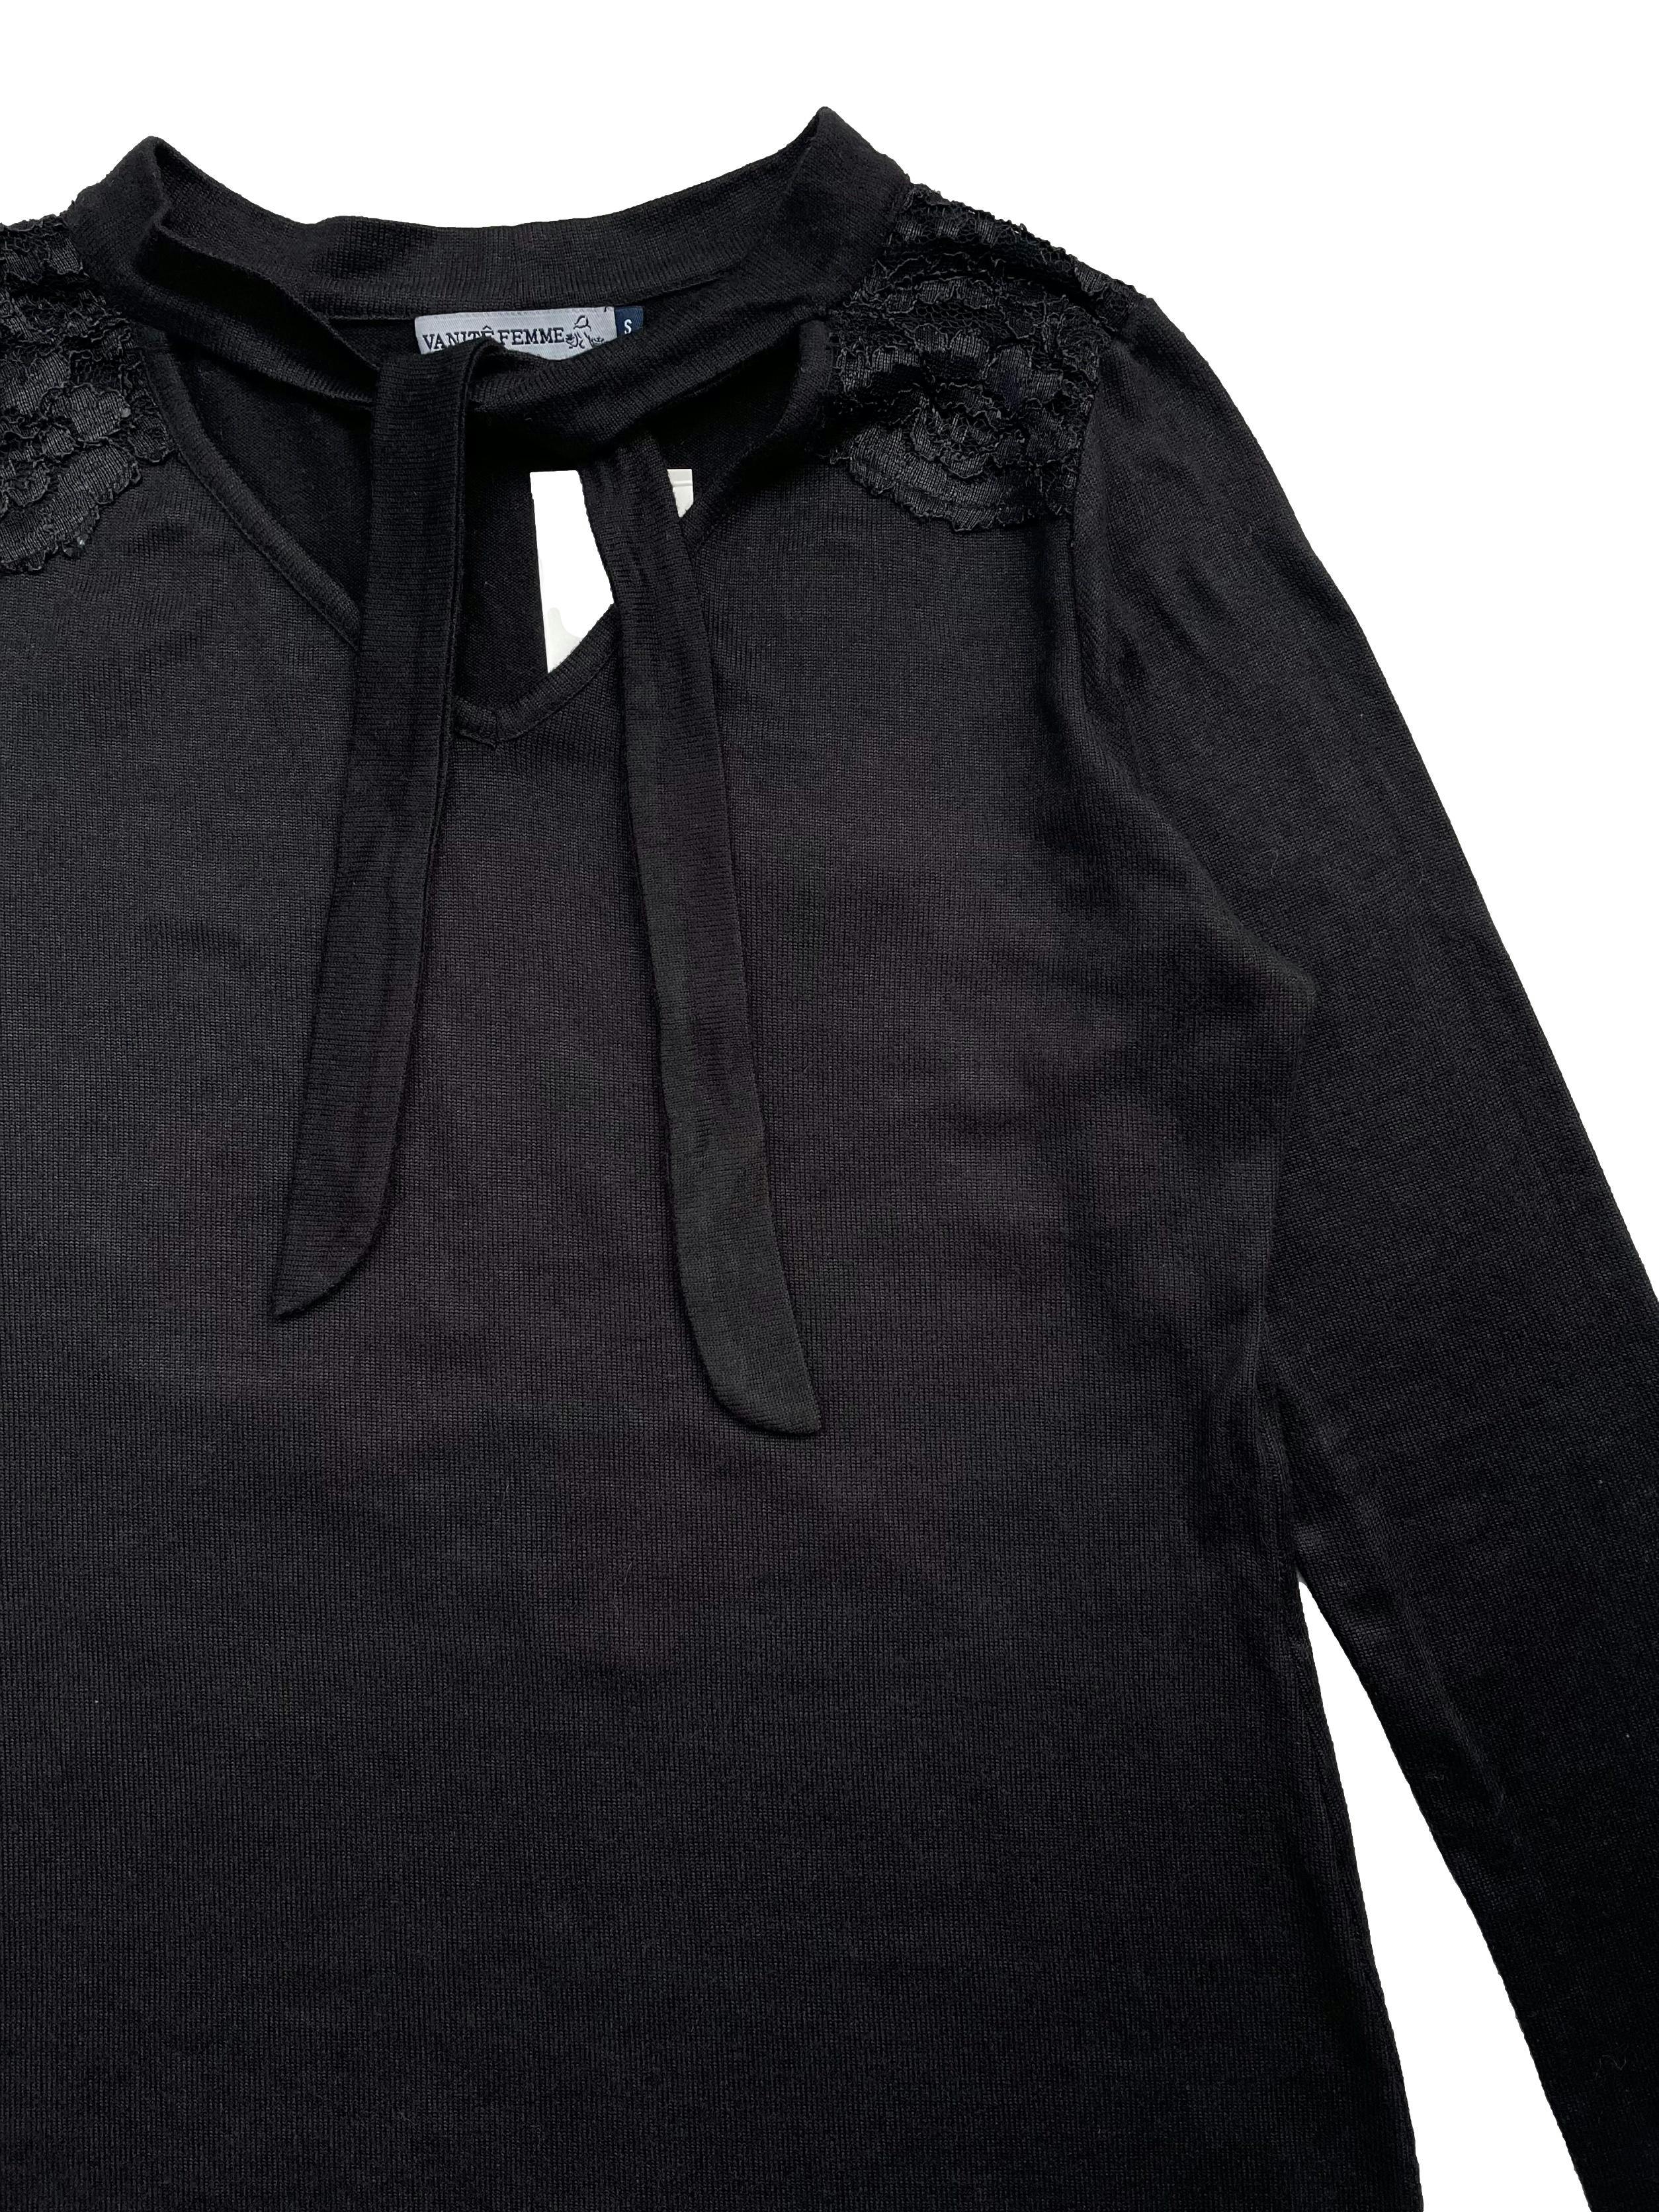 Chompa Vanite Femme negra delgada se amarra en el cuello y tiene aplicaciones de encaje en los hombros. Busto 90cm Largo 56cm.